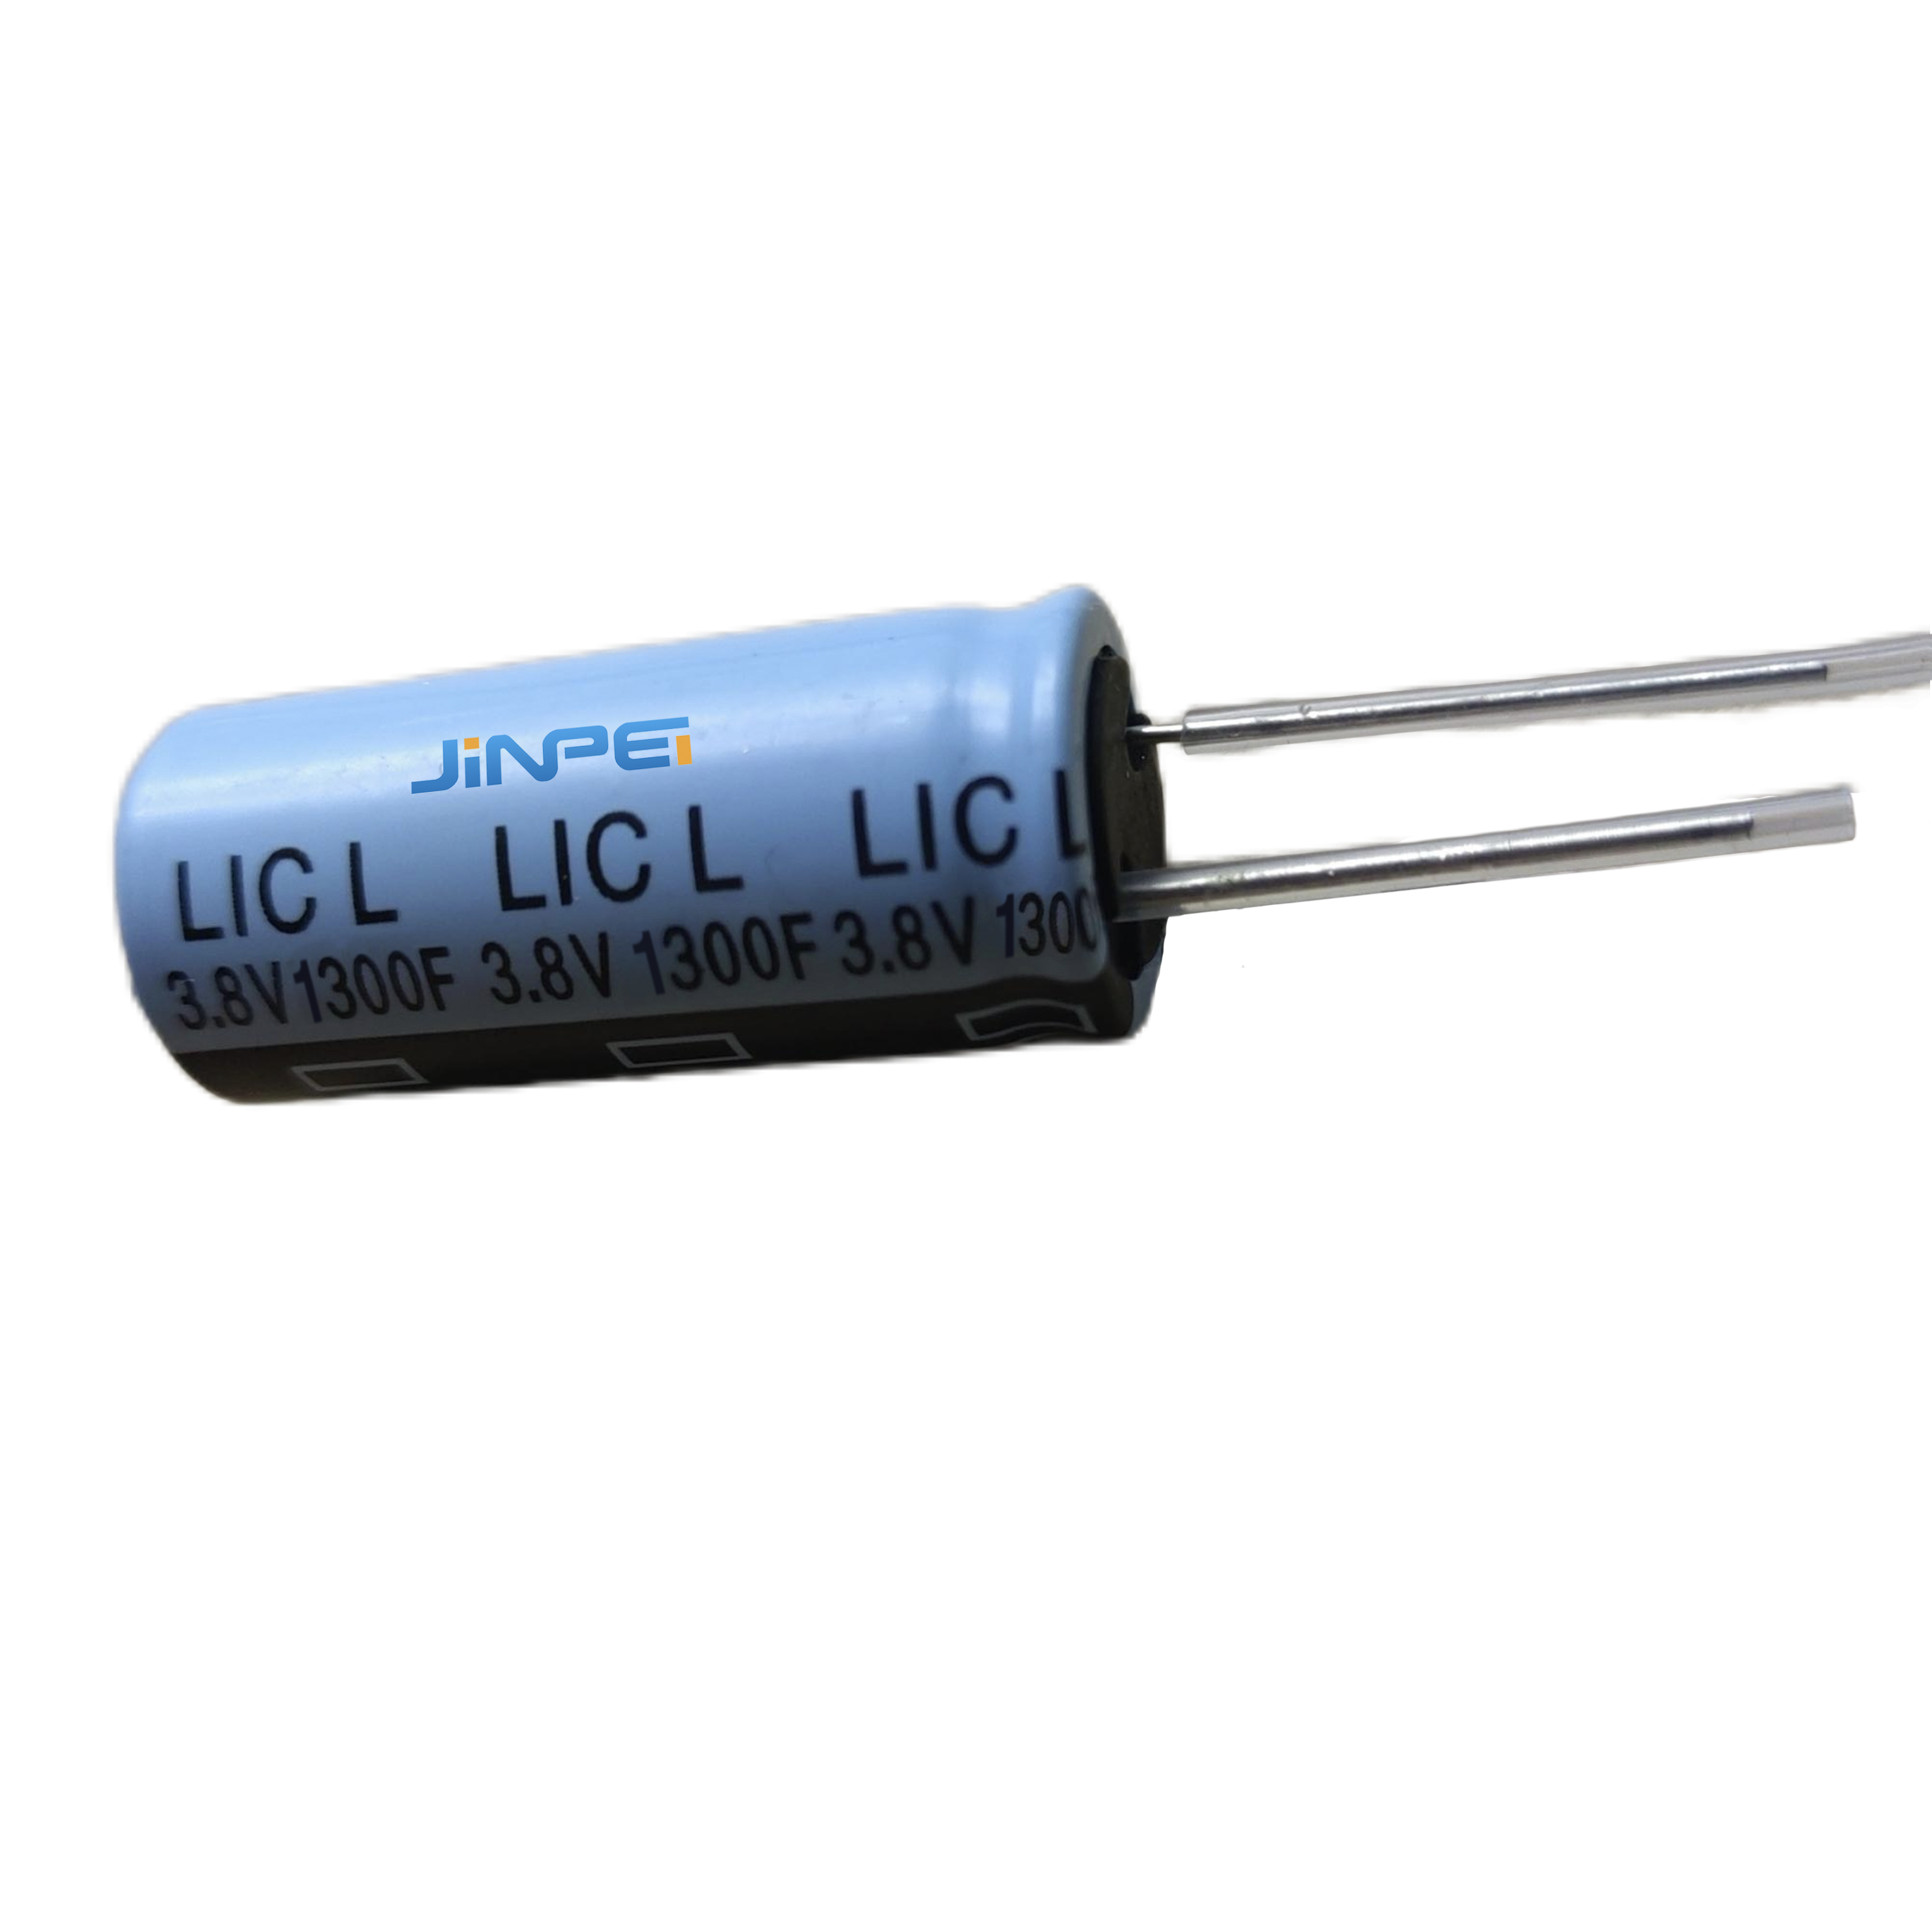 방사형 리드 리튬 이온 커패시터 LIC 1300F